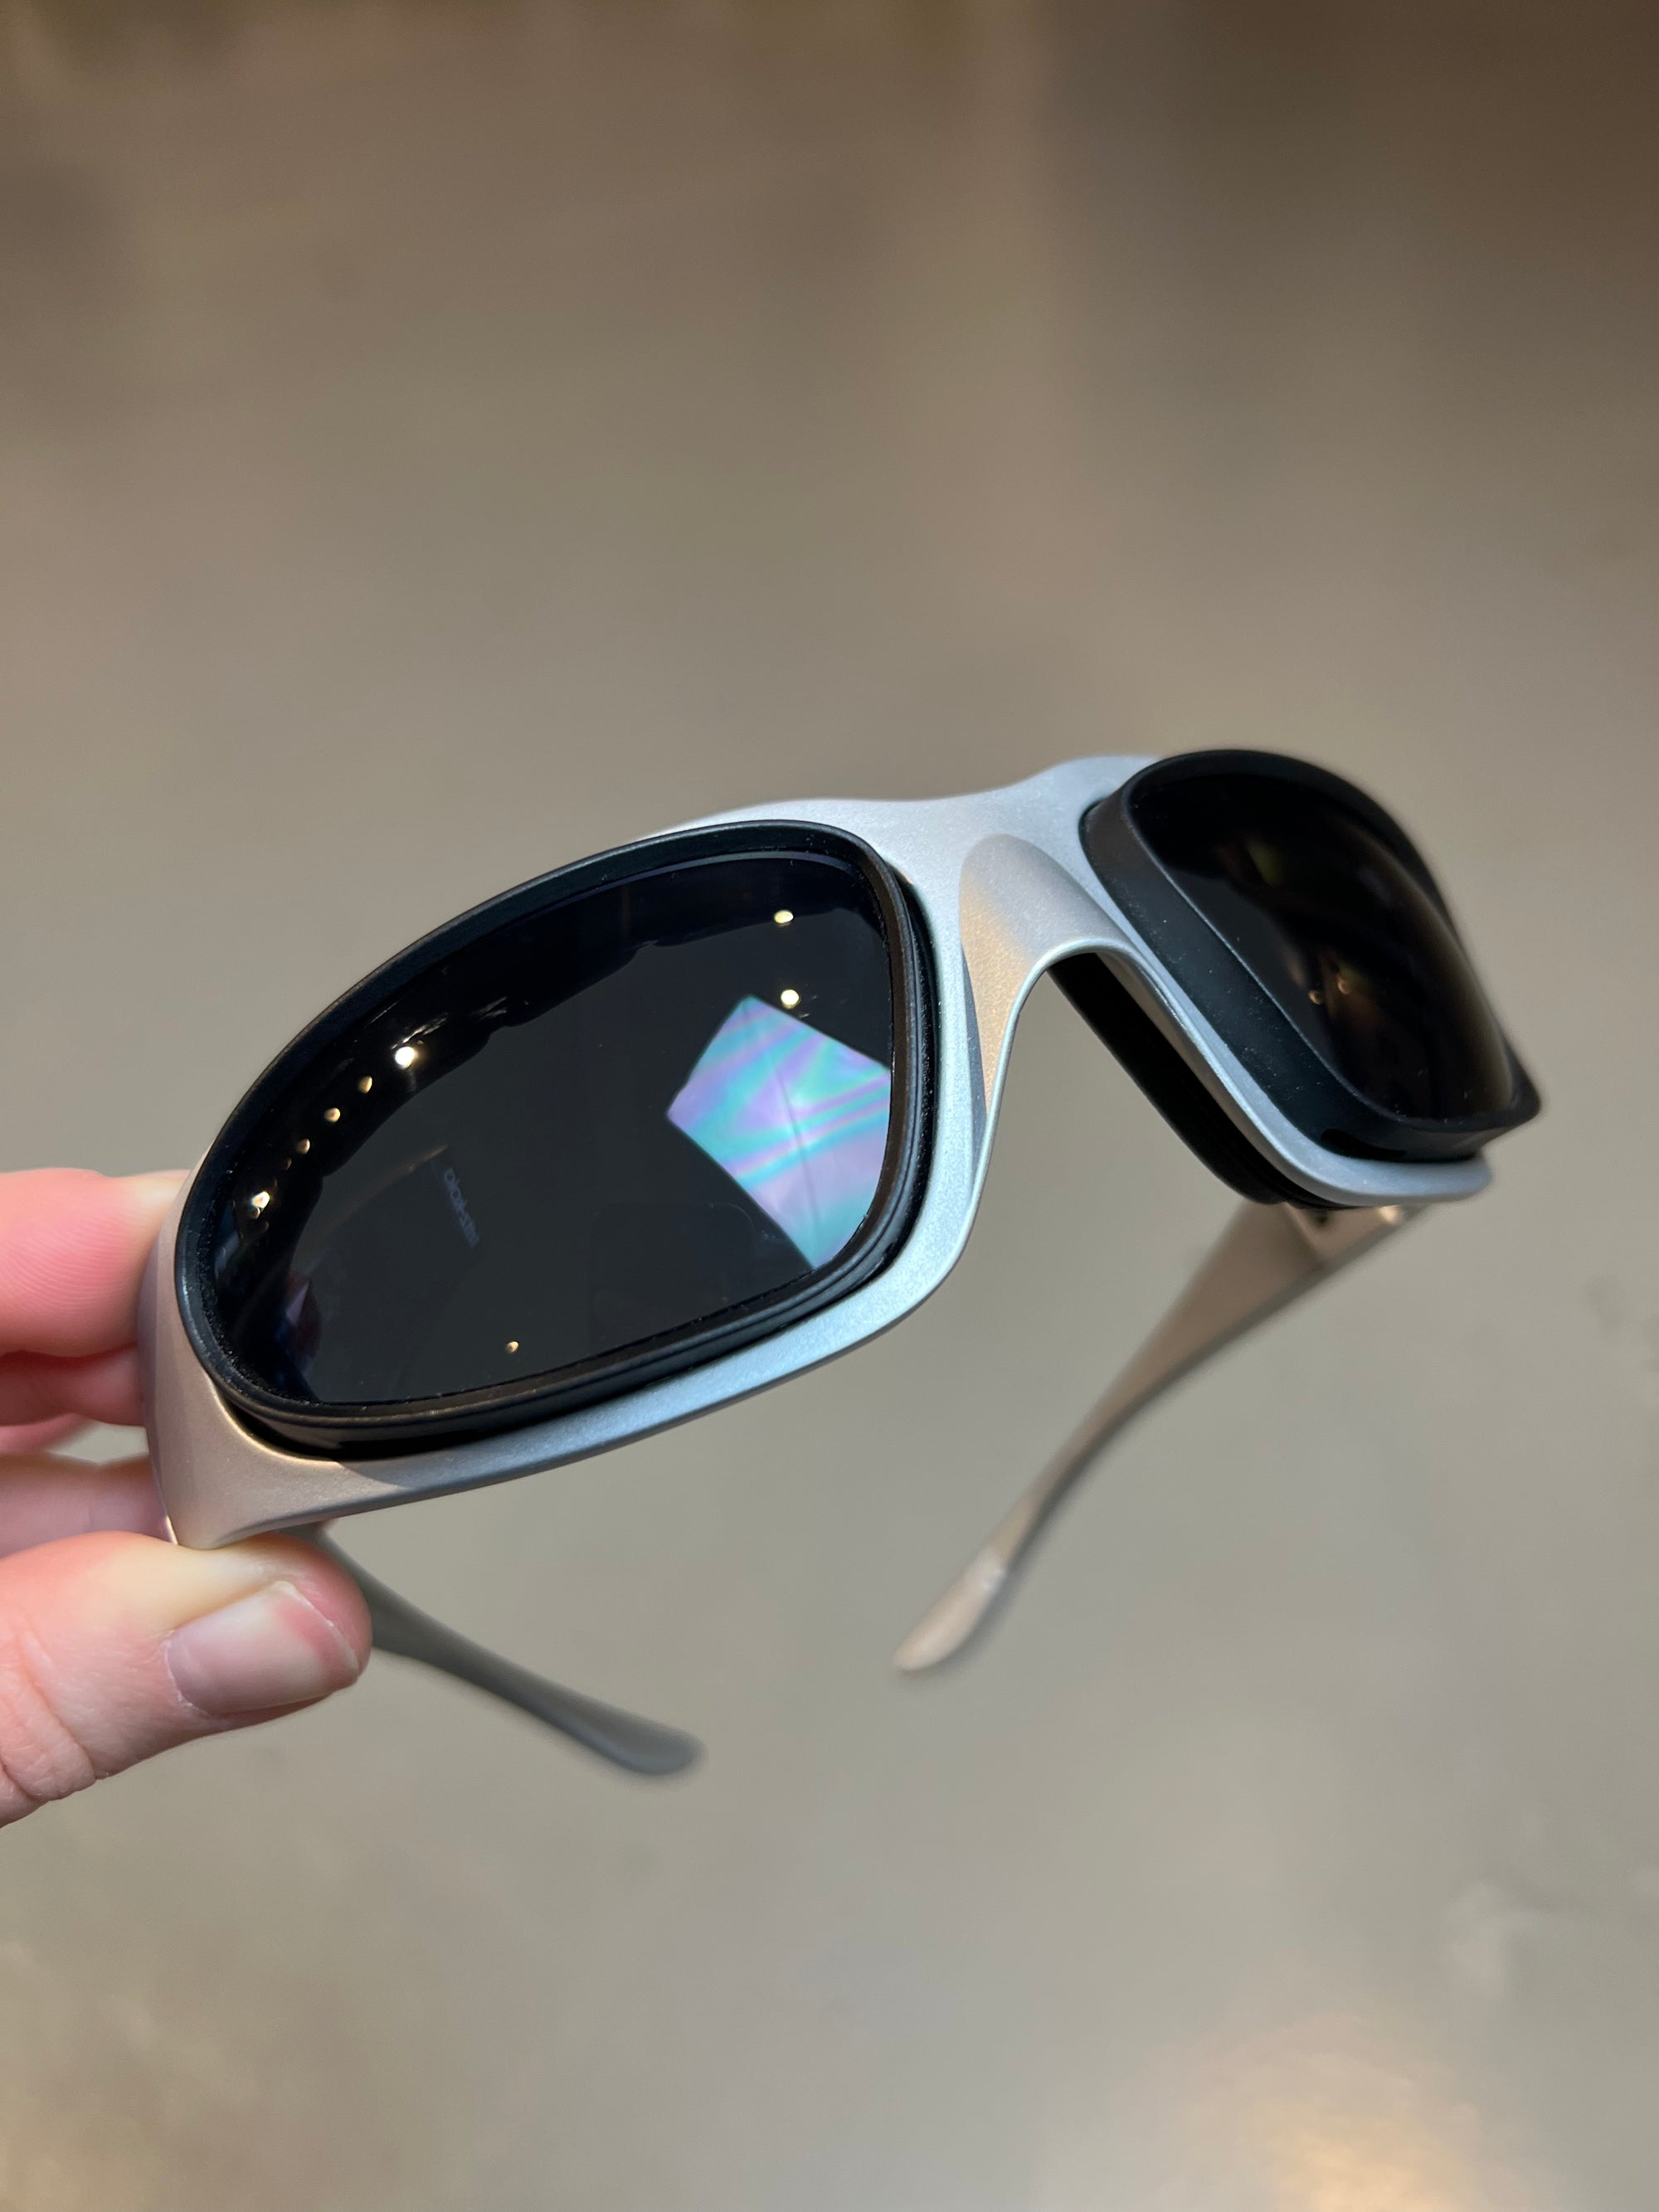 Produktbild von einer Baruffaldi Y2K Sonnenbrille vor grauem Hintergrund.